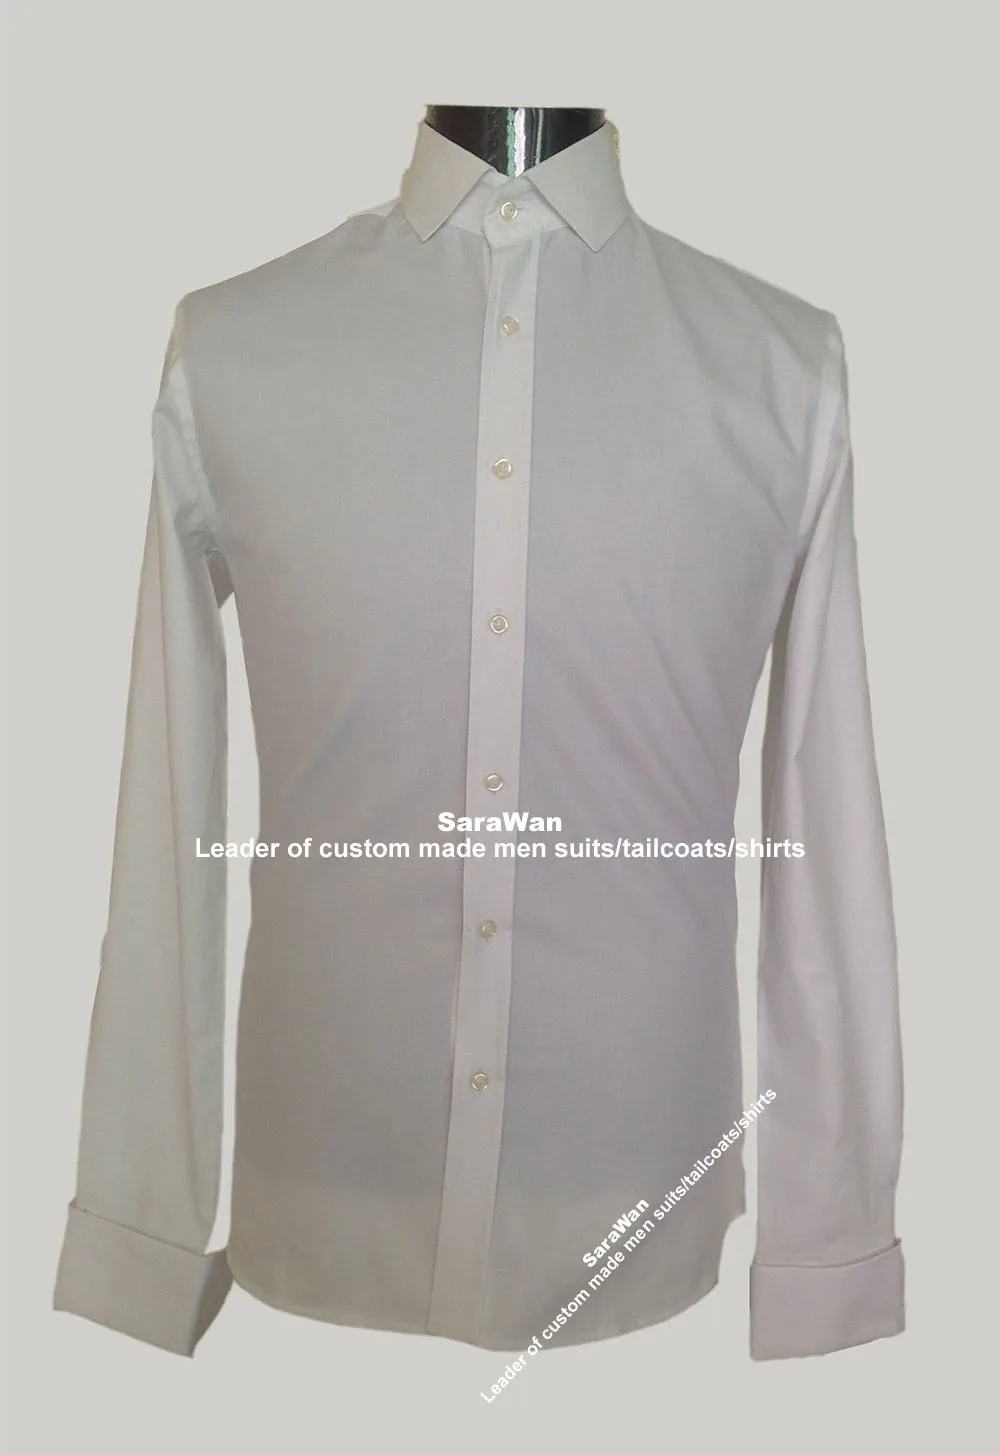 Белая мужская классическая рубашка для Для мужчин на заказ с длинным рукавом белая рубашка Для мужчин, 100% хлопковая рубашка с 12 моделей, Slim